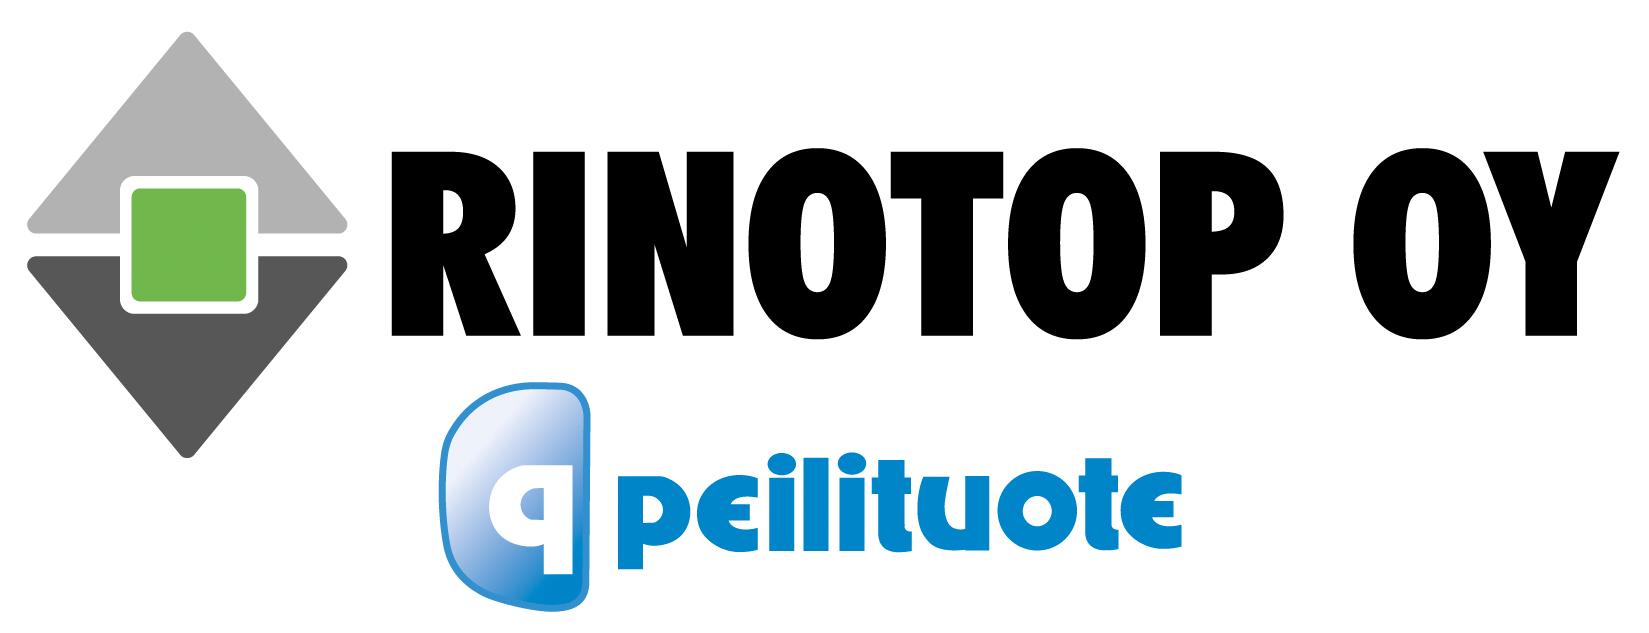 Rinotop Oy:n logo.